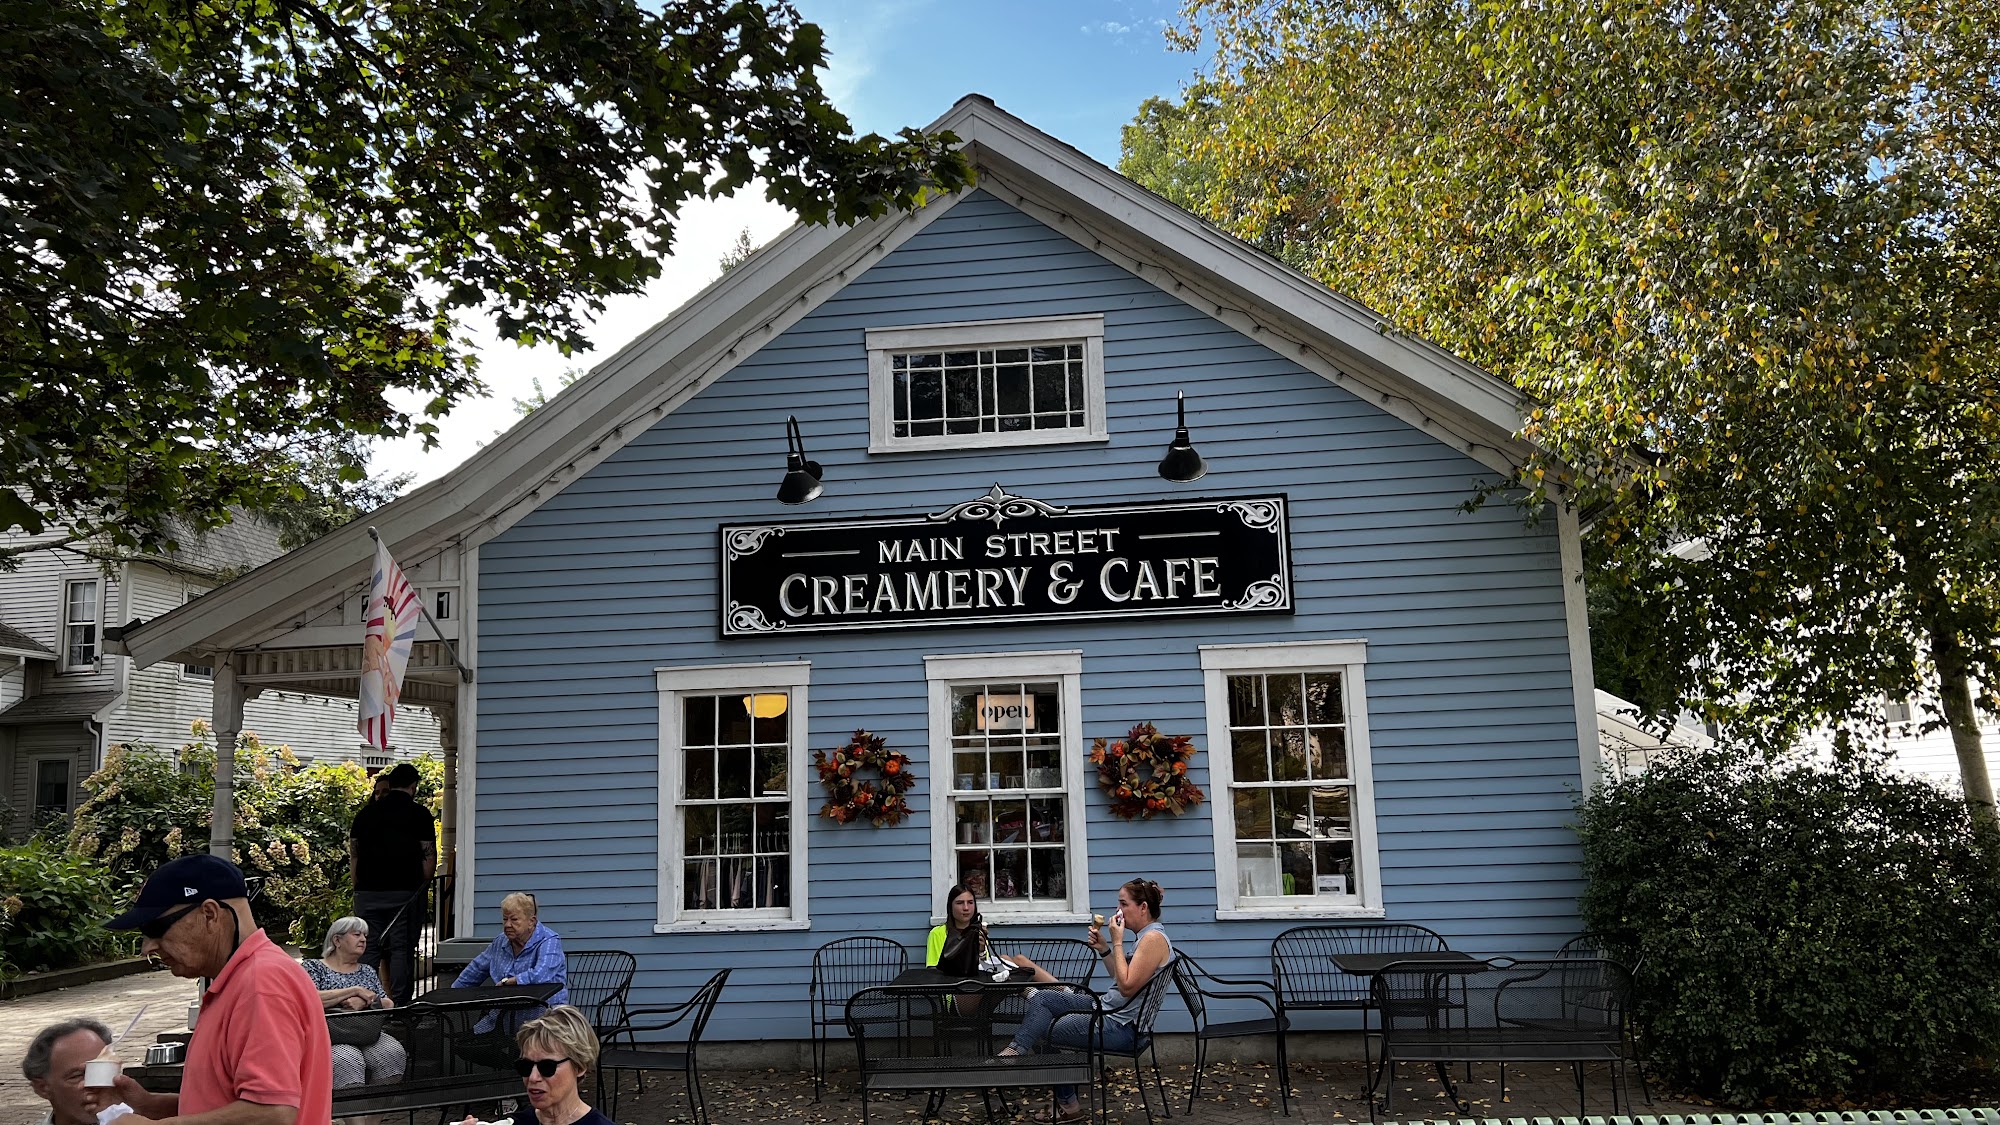 Main Street Creamery & Cafe